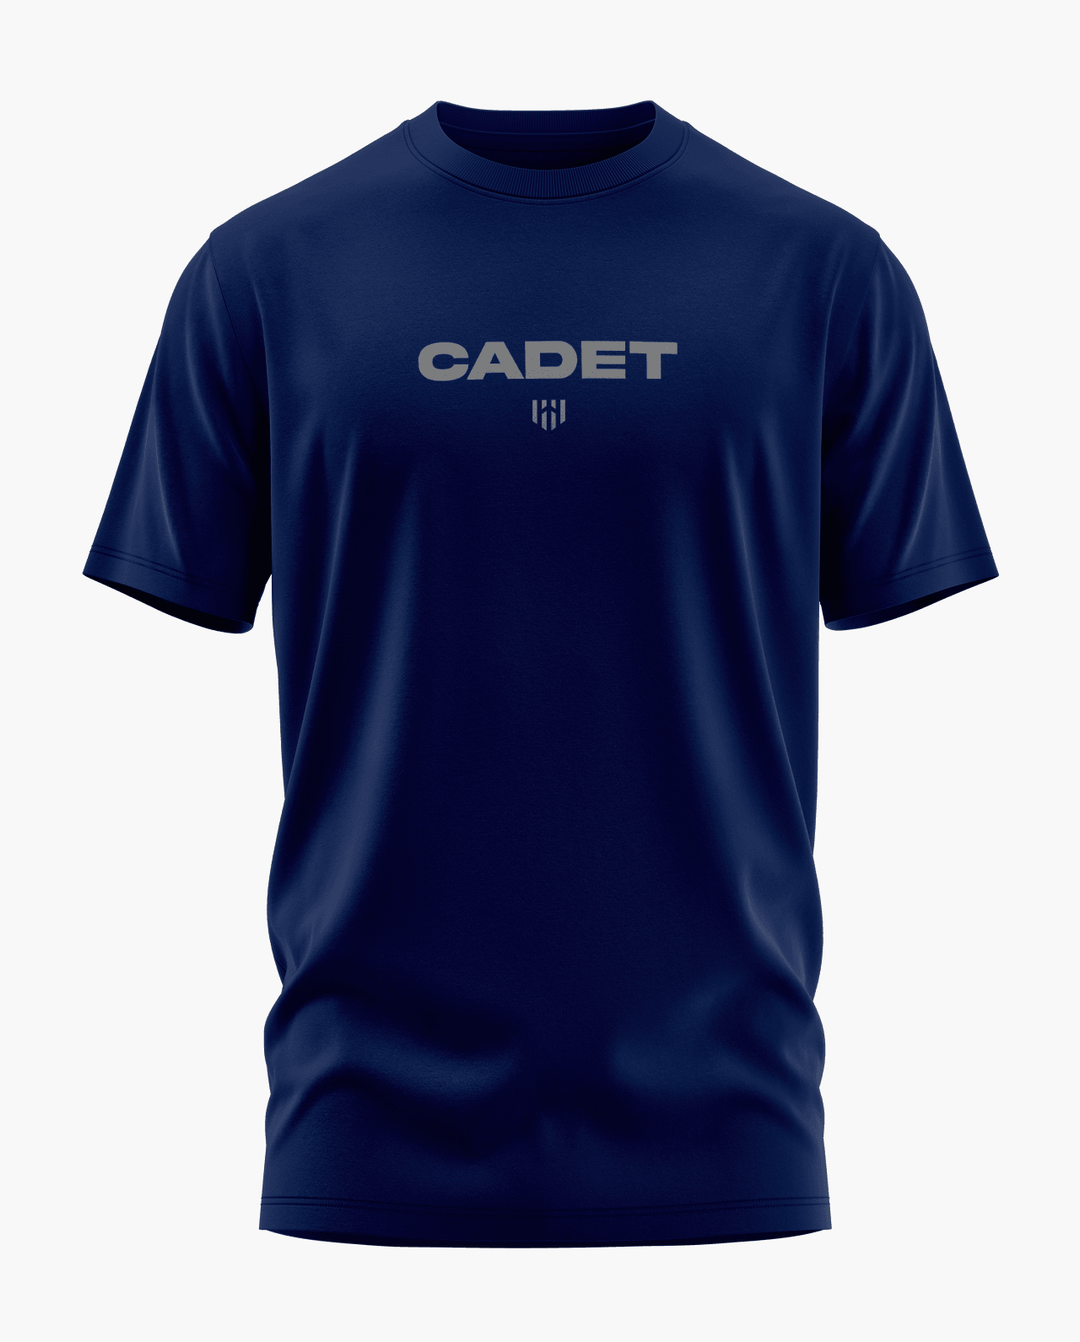 Cadet T-Shirt - Aero Armour